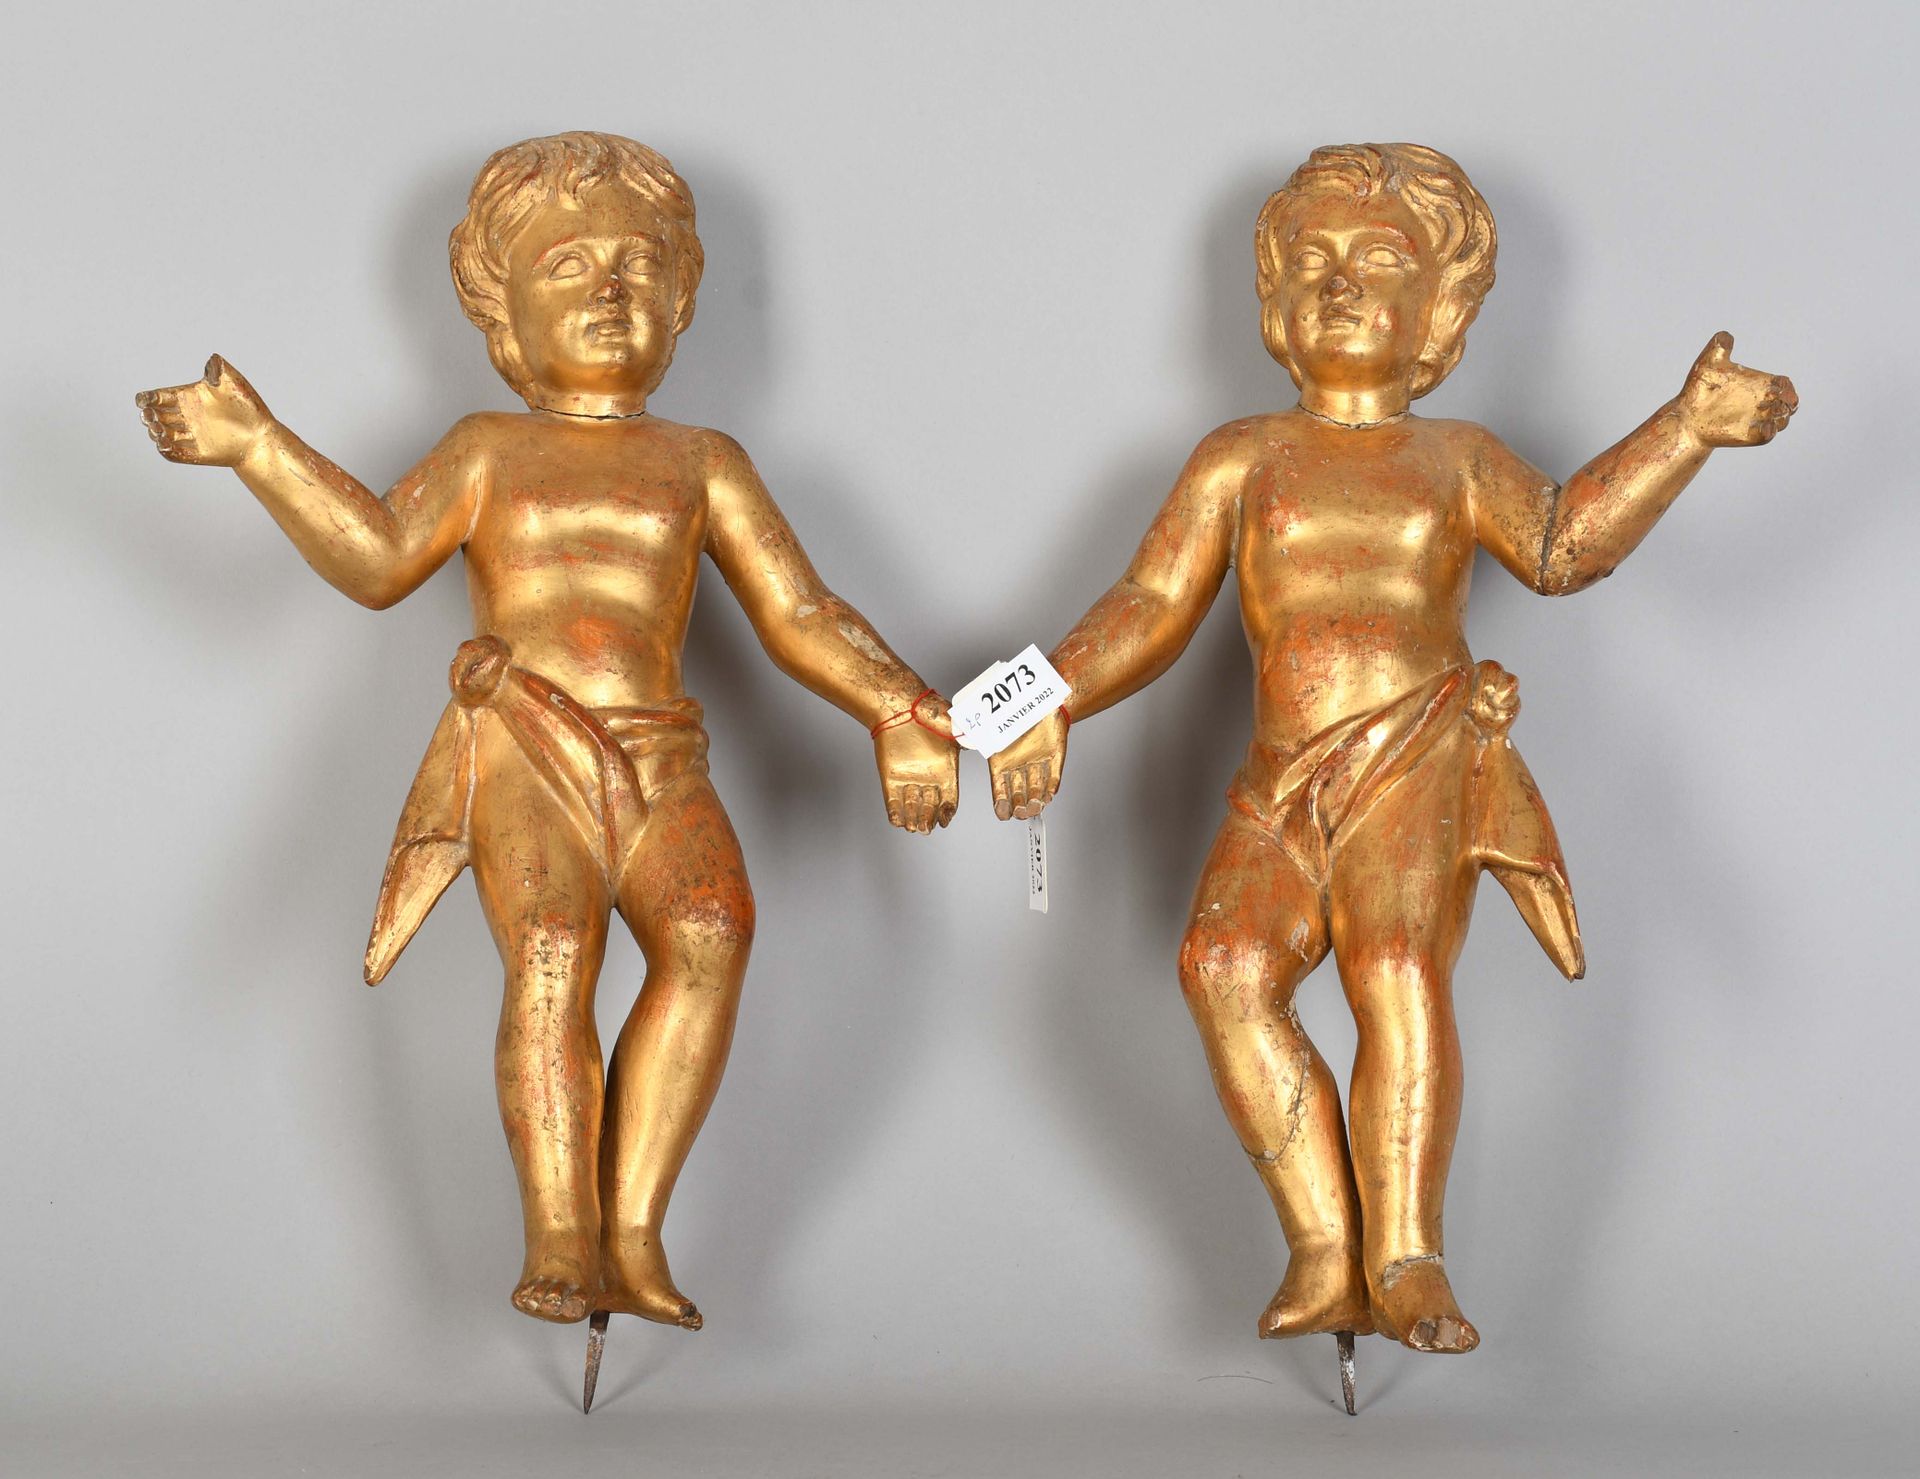 Null Coppia di cherubini in legno dorato - Dita accidentali

Altezza: 43 cm.